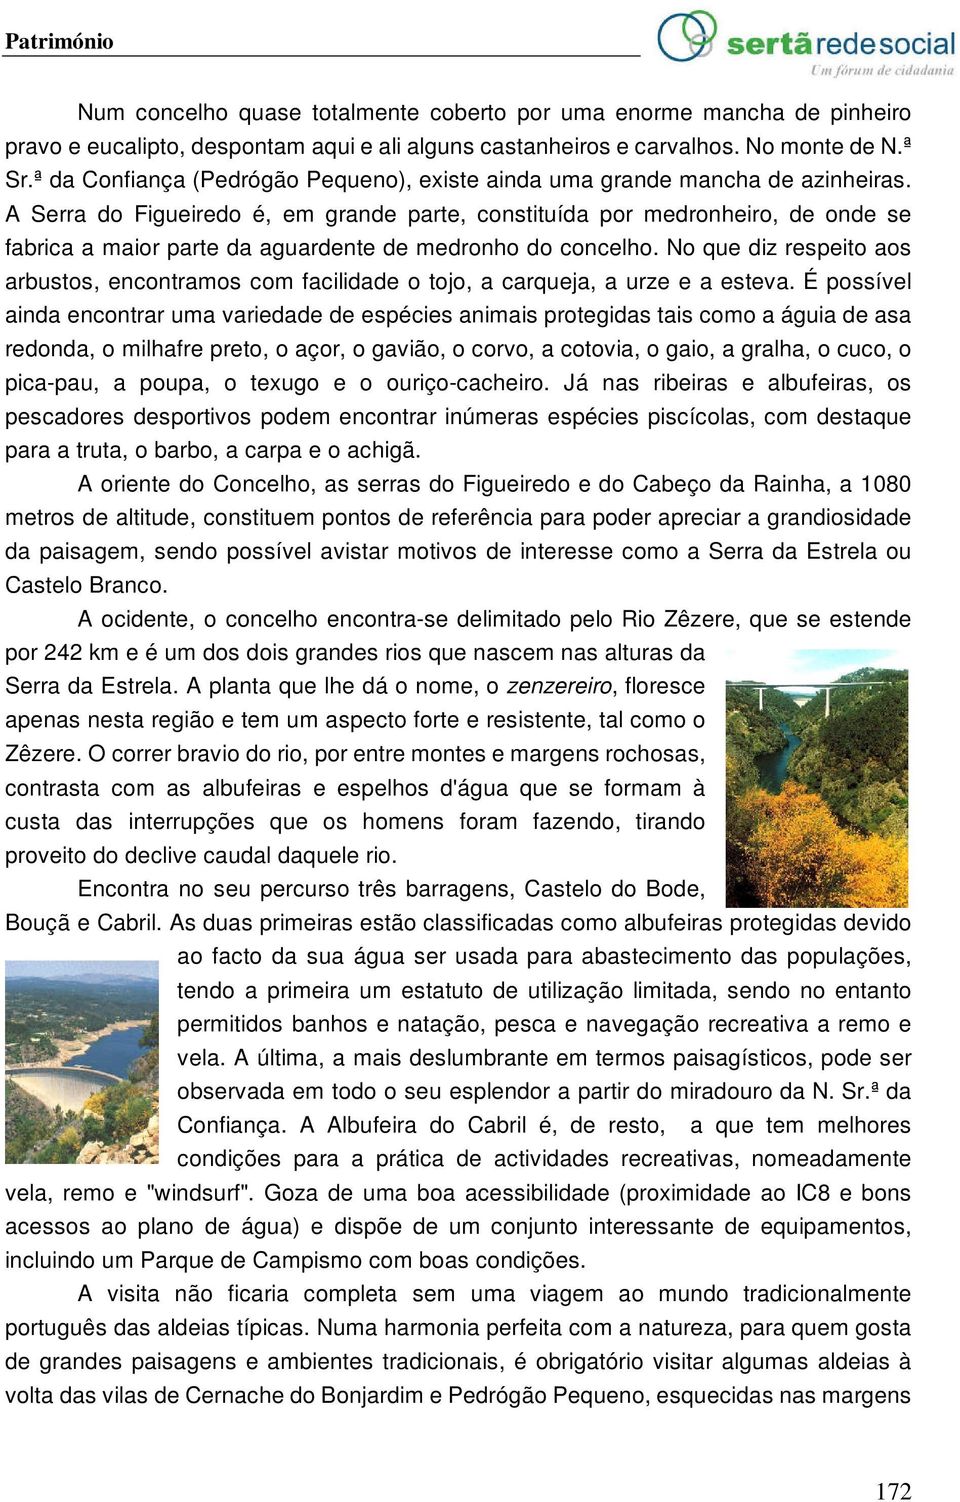 A Serra do Figueiredo é, em grande parte, constituída por medronheiro, de onde se fabrica a maior parte da aguardente de medronho do concelho.